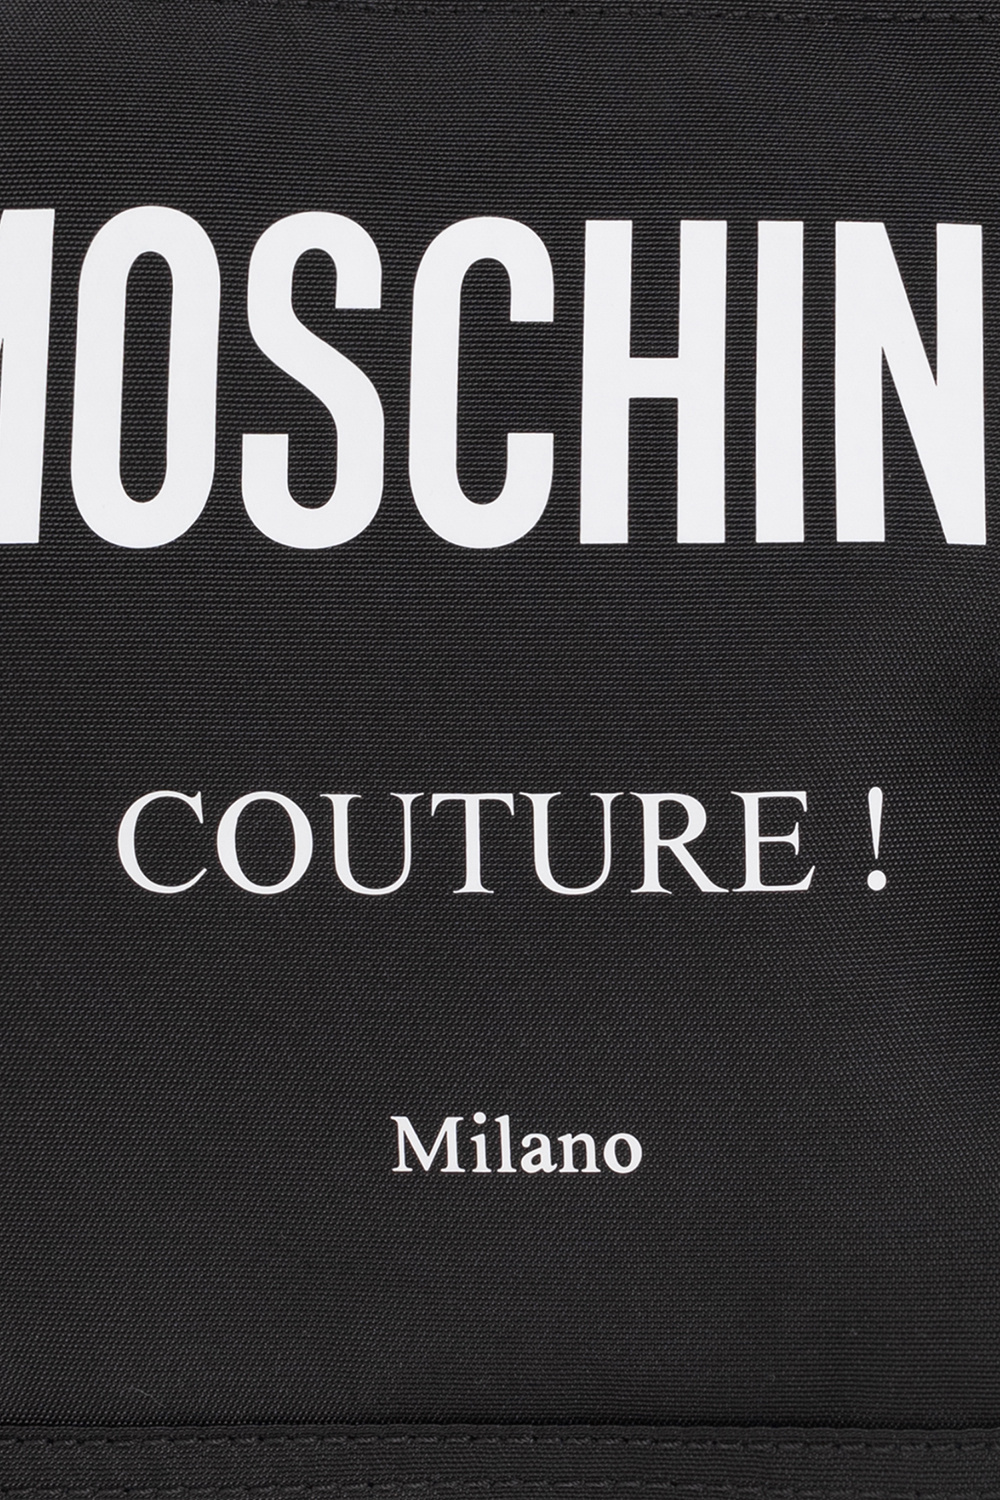 Moschino Un nouveau tote bag Gucci x COMME des GARÇONS